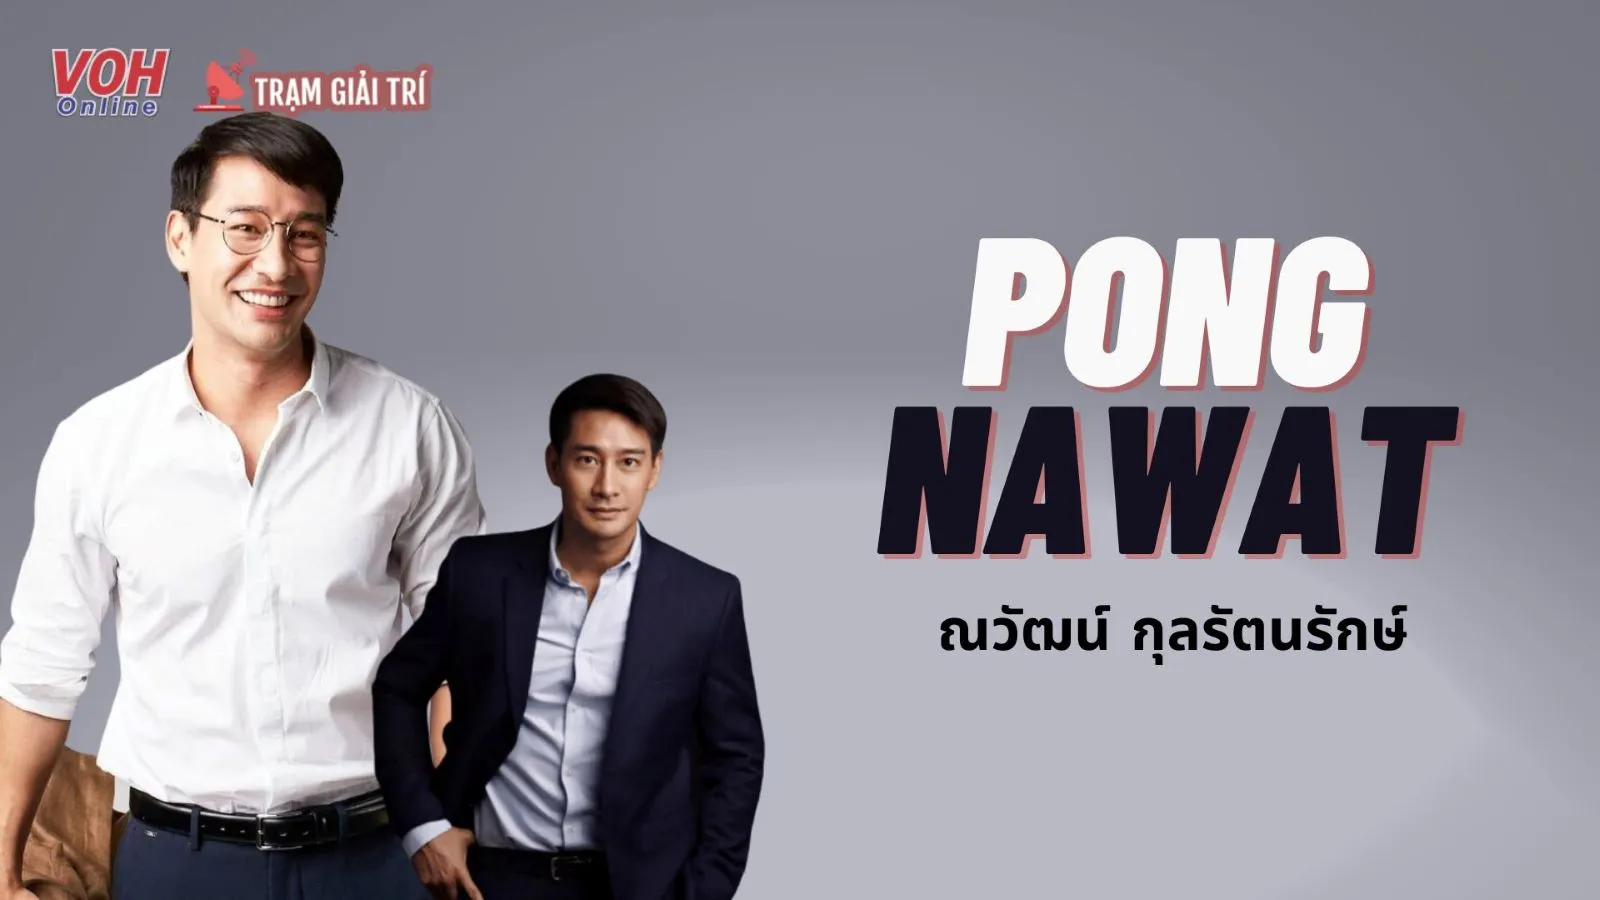 Pong Nawat - Diễn viên chuyên trị vai ngoại tình, đời tư trong sạch dù hoạt động hơn 20 năm